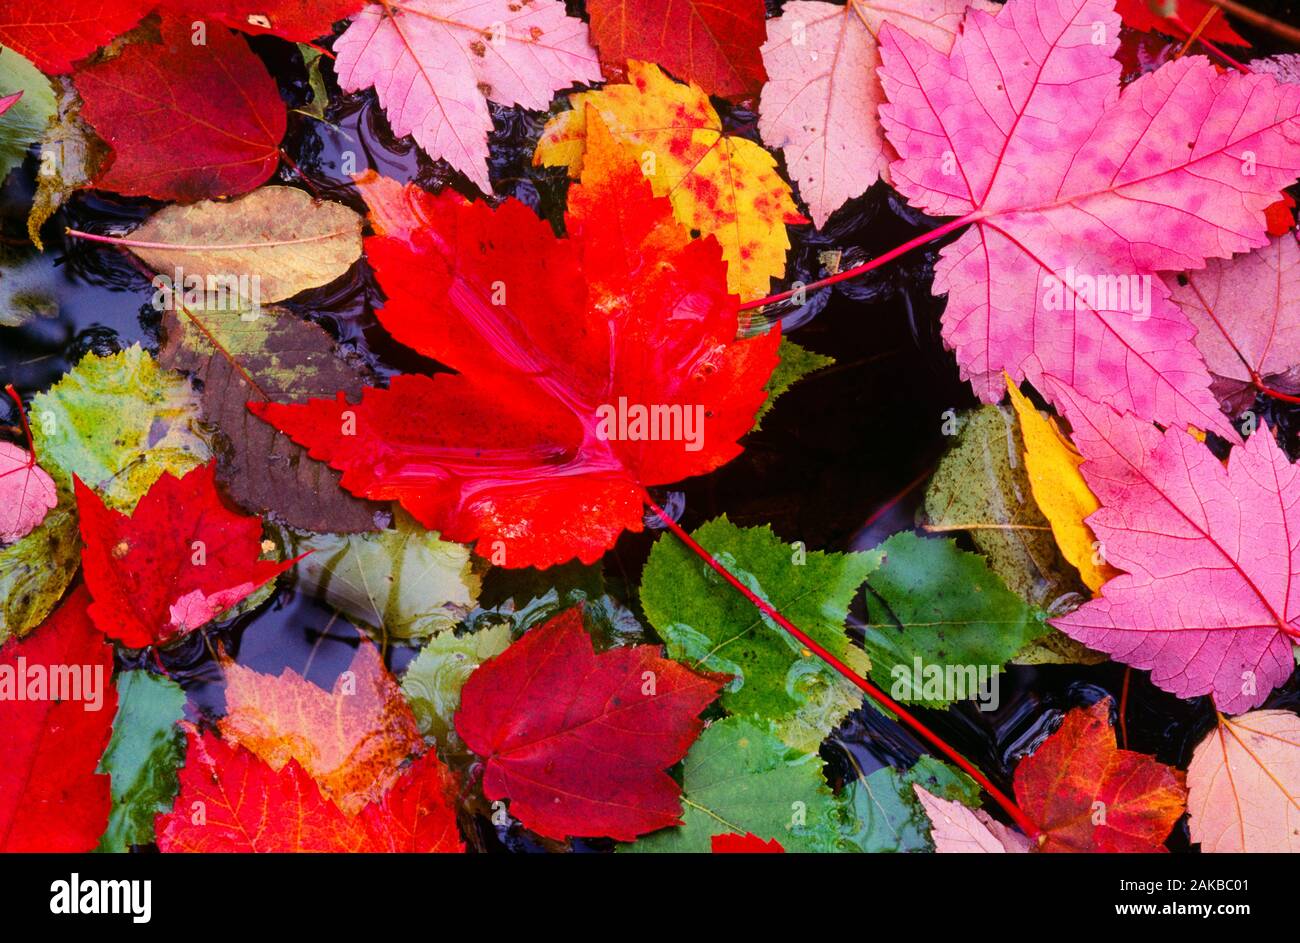 Close-up shot of fallen feuilles d'érable en couleurs d'automne Banque D'Images